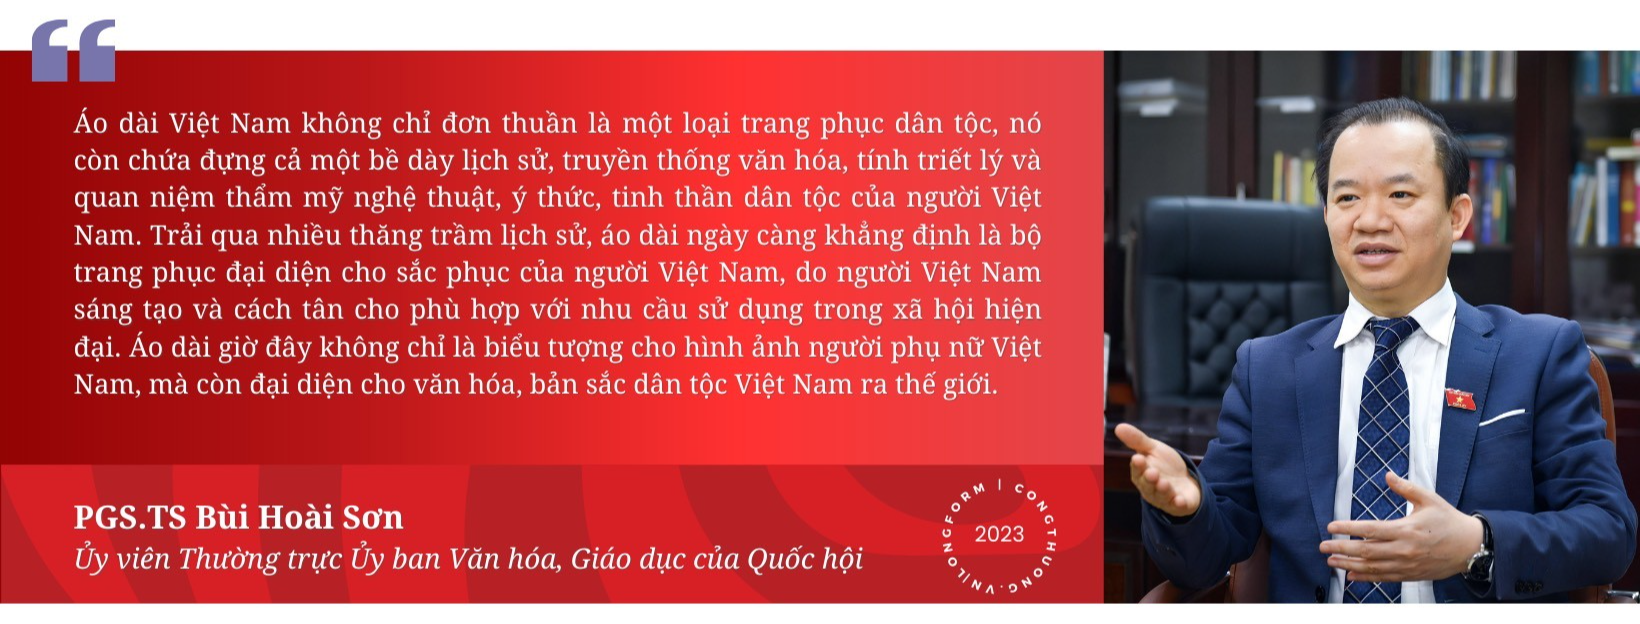 Longform | Áo dài Việt Nam: Từ biểu tượng đến giá trị kinh tế du lịch